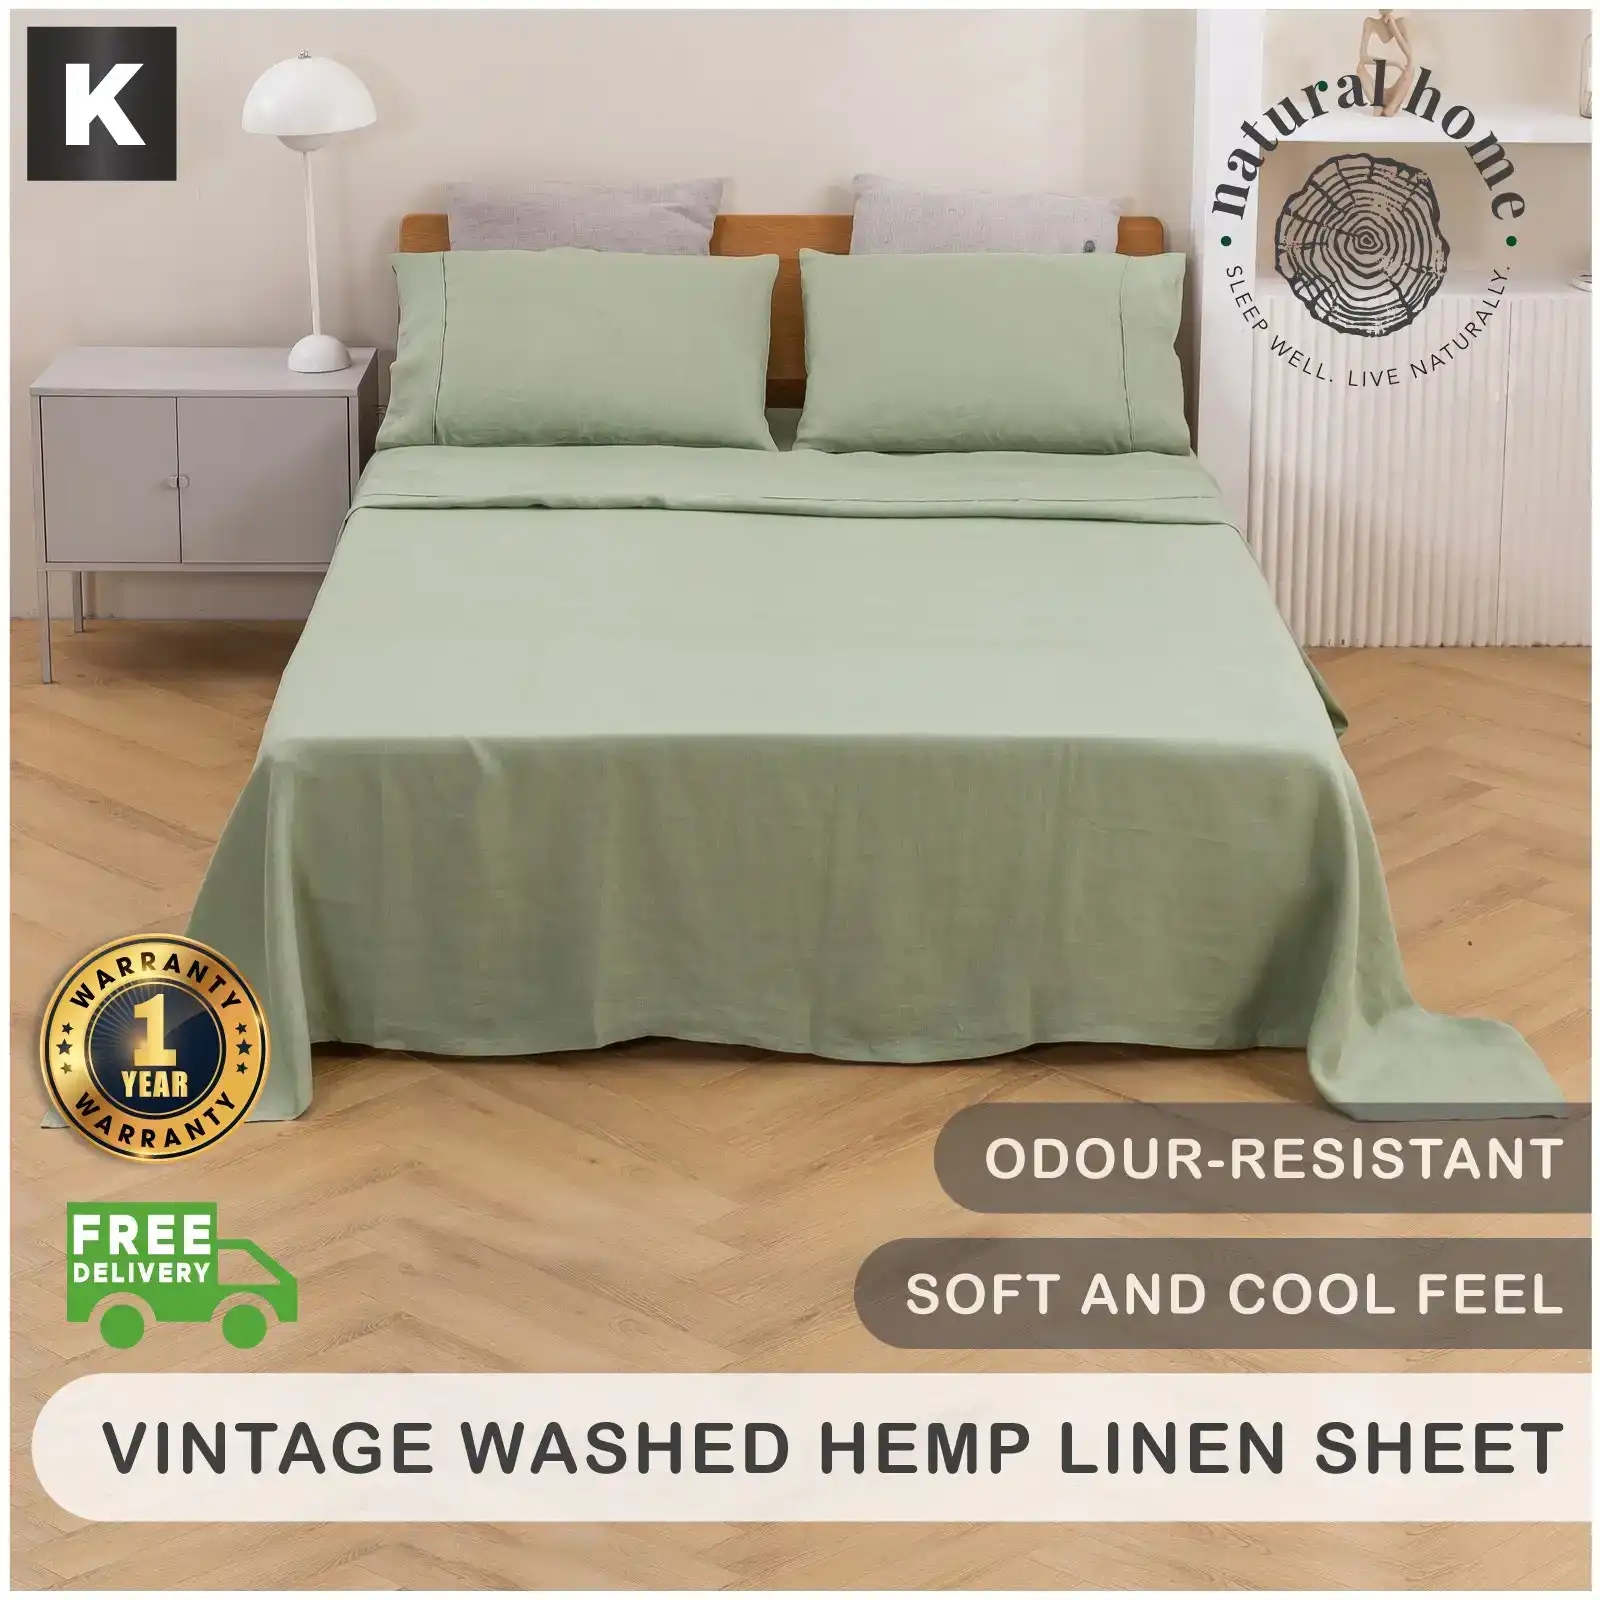 Natural Home Vintage Washed Hemp Linen Sheet Set Sage King Bed